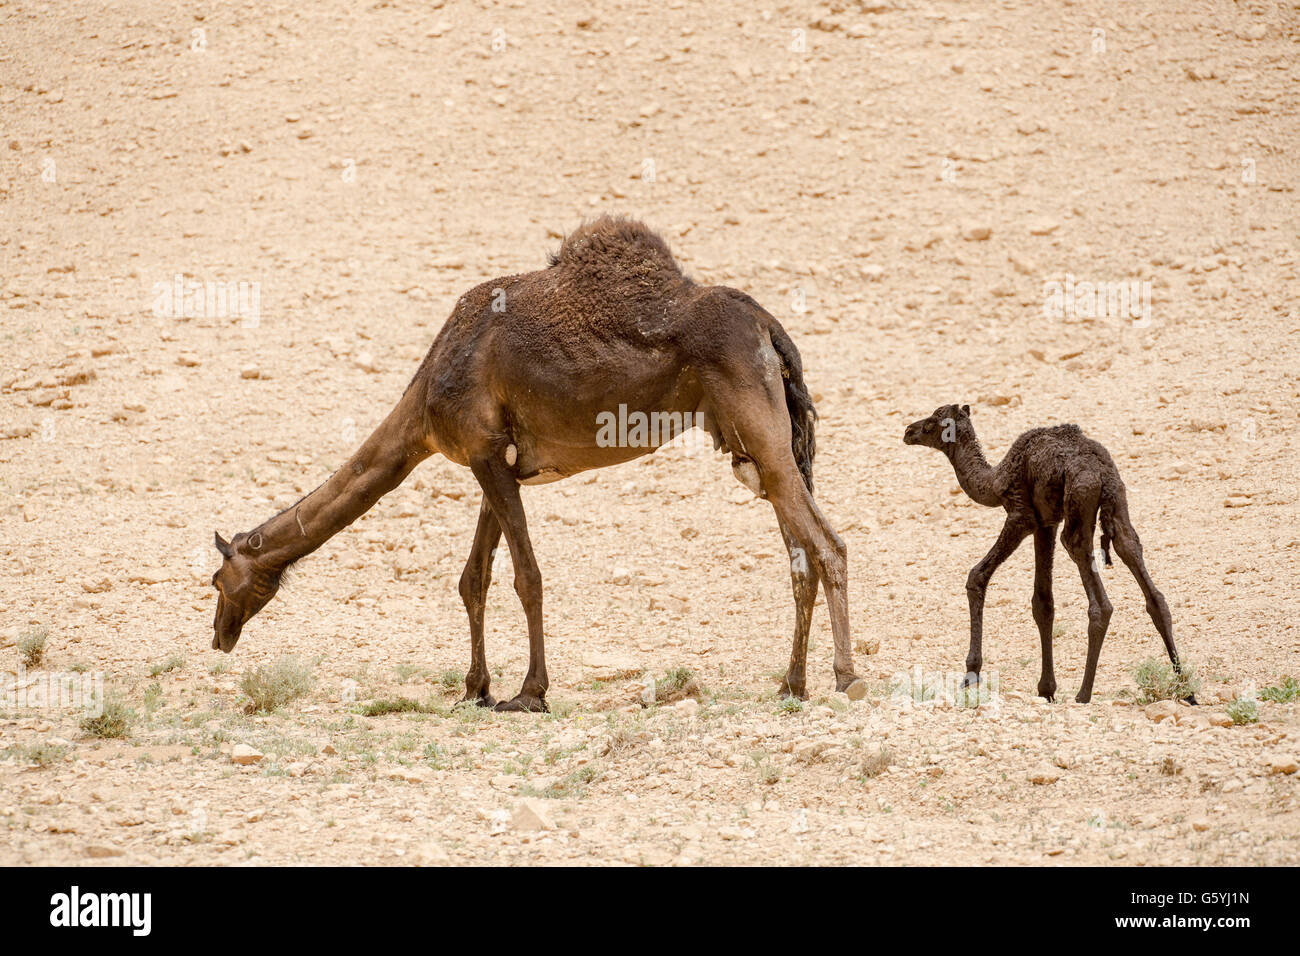 Kamel and baby kamel in Saudi Arabia desert Stock Photo